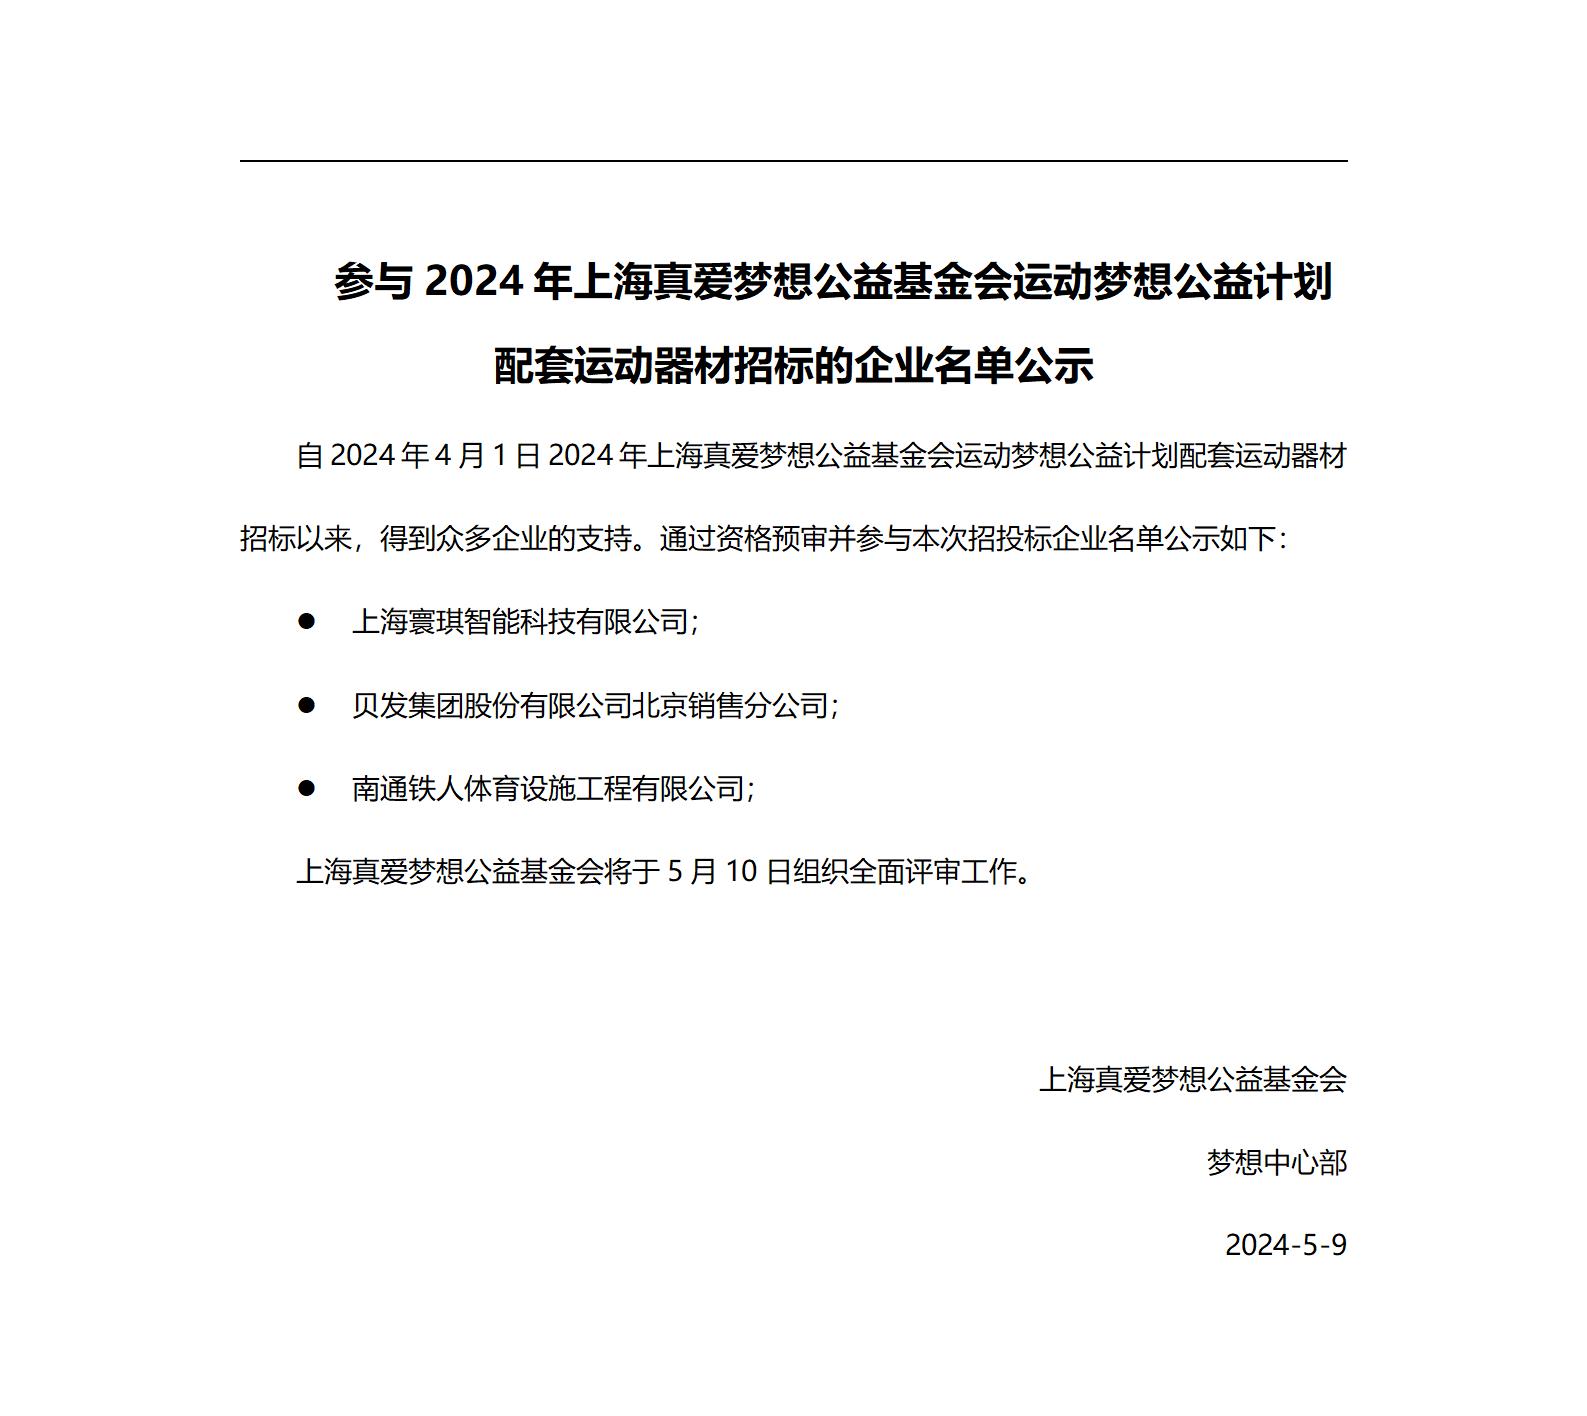 参与2024年上海真爱梦想公益基金会运动梦想公益计划配套运动器材招标的企业名单公示_01